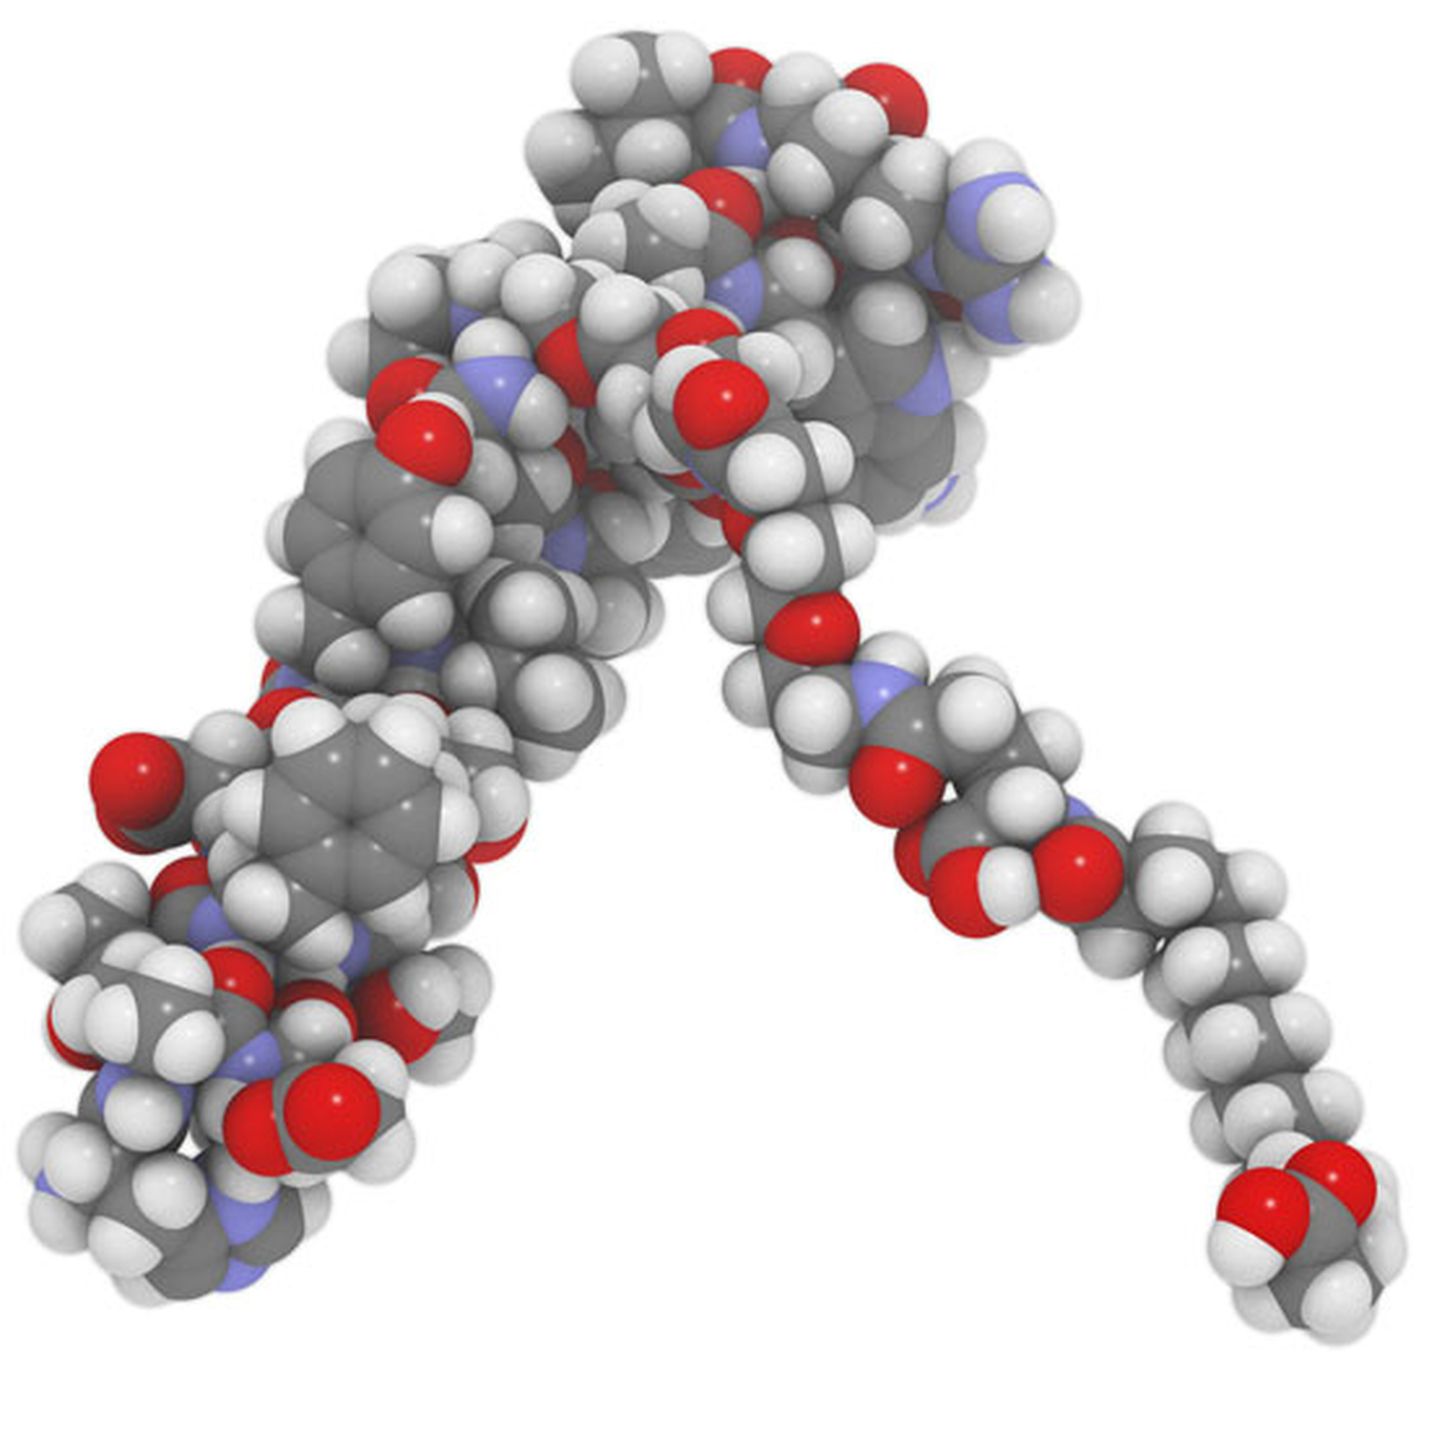 Semaglutiid on üsna suur ja kompleksne molekul. Elementkoostisega 	C187H291N45O59 ühendi moelkulimassiks on 4114.641 g/mol ja tegemist on mõningate kõrvaltoimetaga ravimiga. Kõrvaltoimed on valdavalt teada nagu ka ravimi kasutamise vastunäidustused.